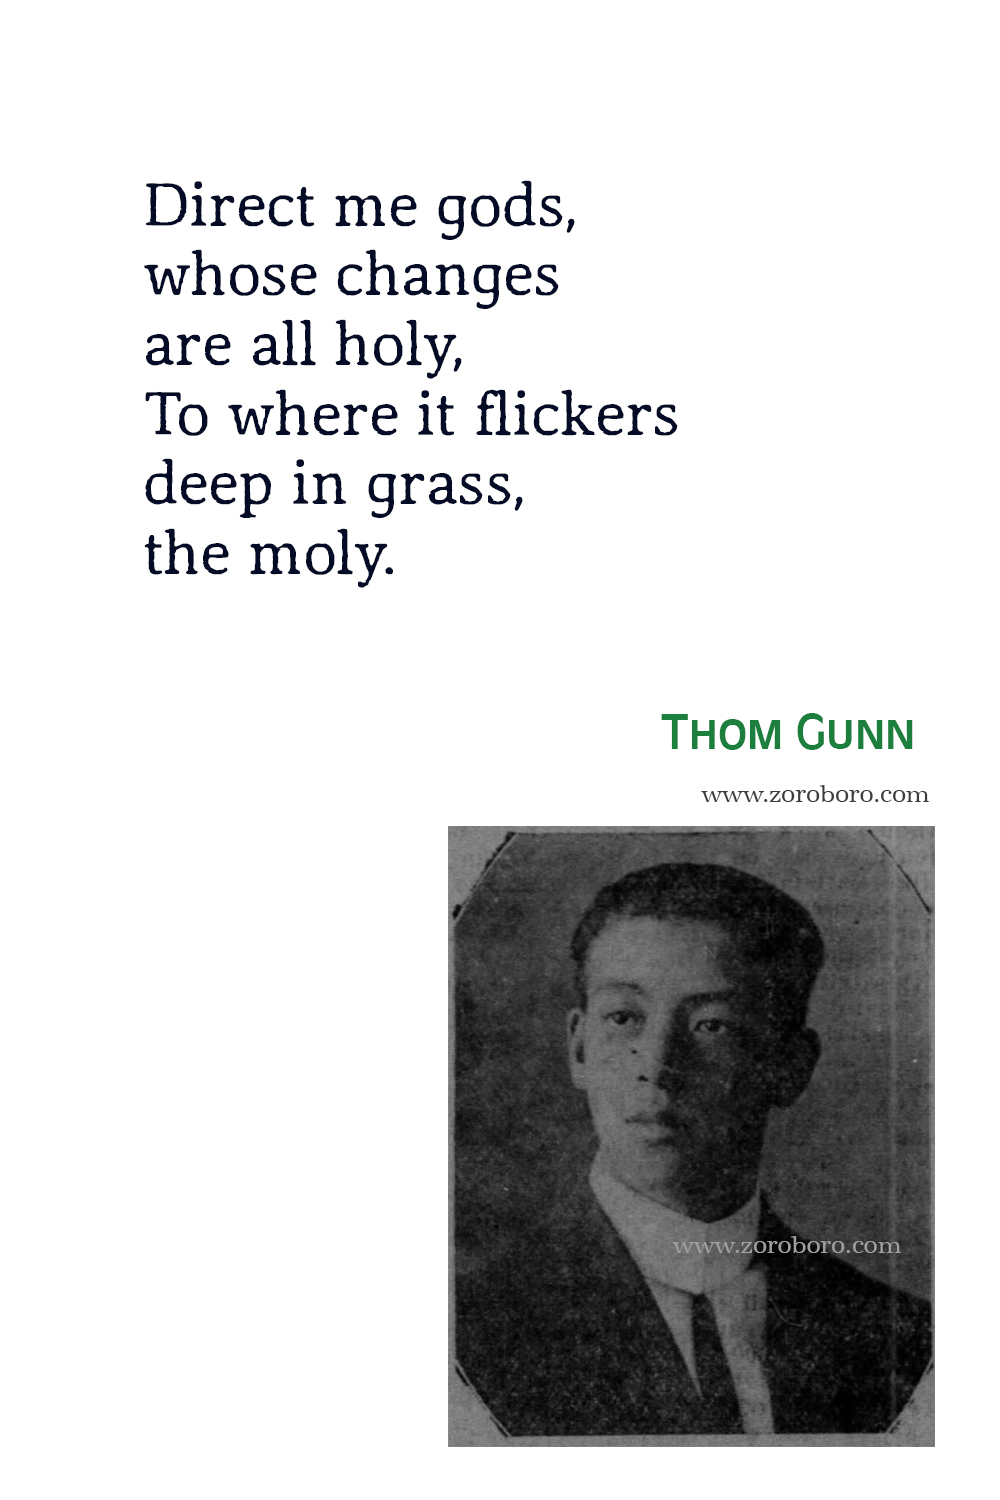 Thom Gunn Quotes, Thom Gunn Poet, Thom Gunn Poetry,Thom Gunn Poems, Thom Gunn Books Quotes, Thom Gunn